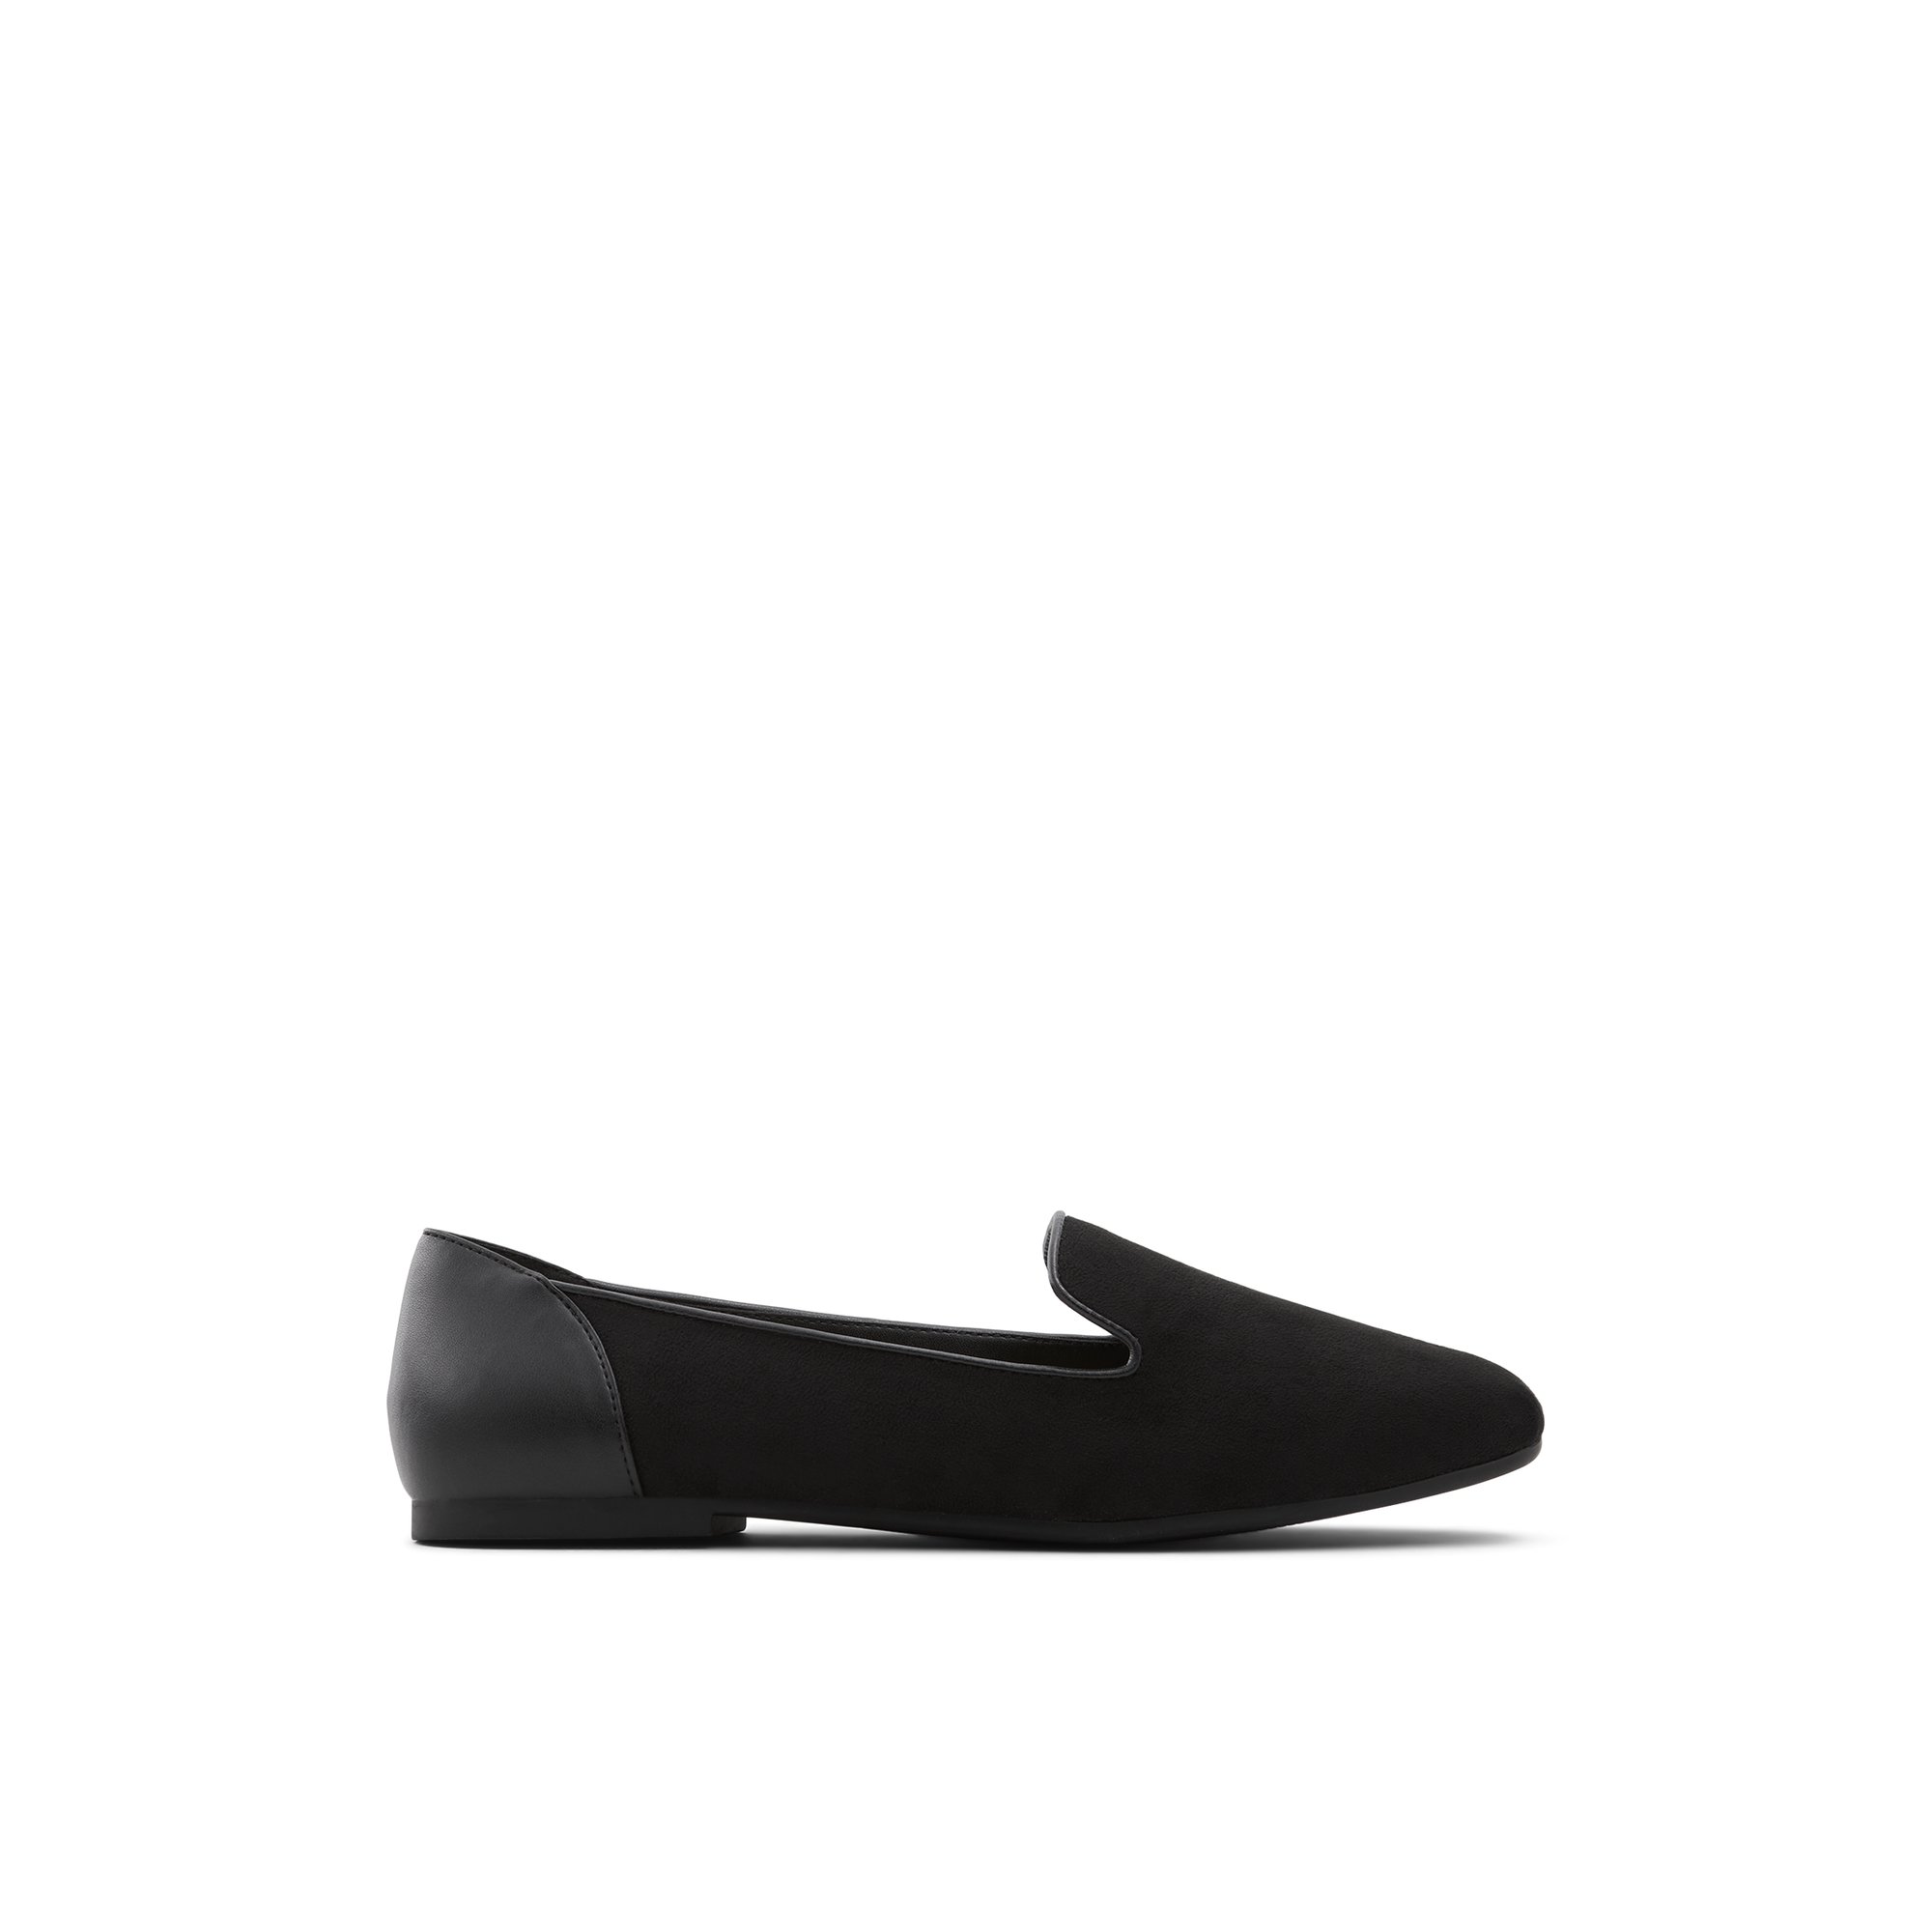 ALDO Mythimna - Women's Loafer - Black